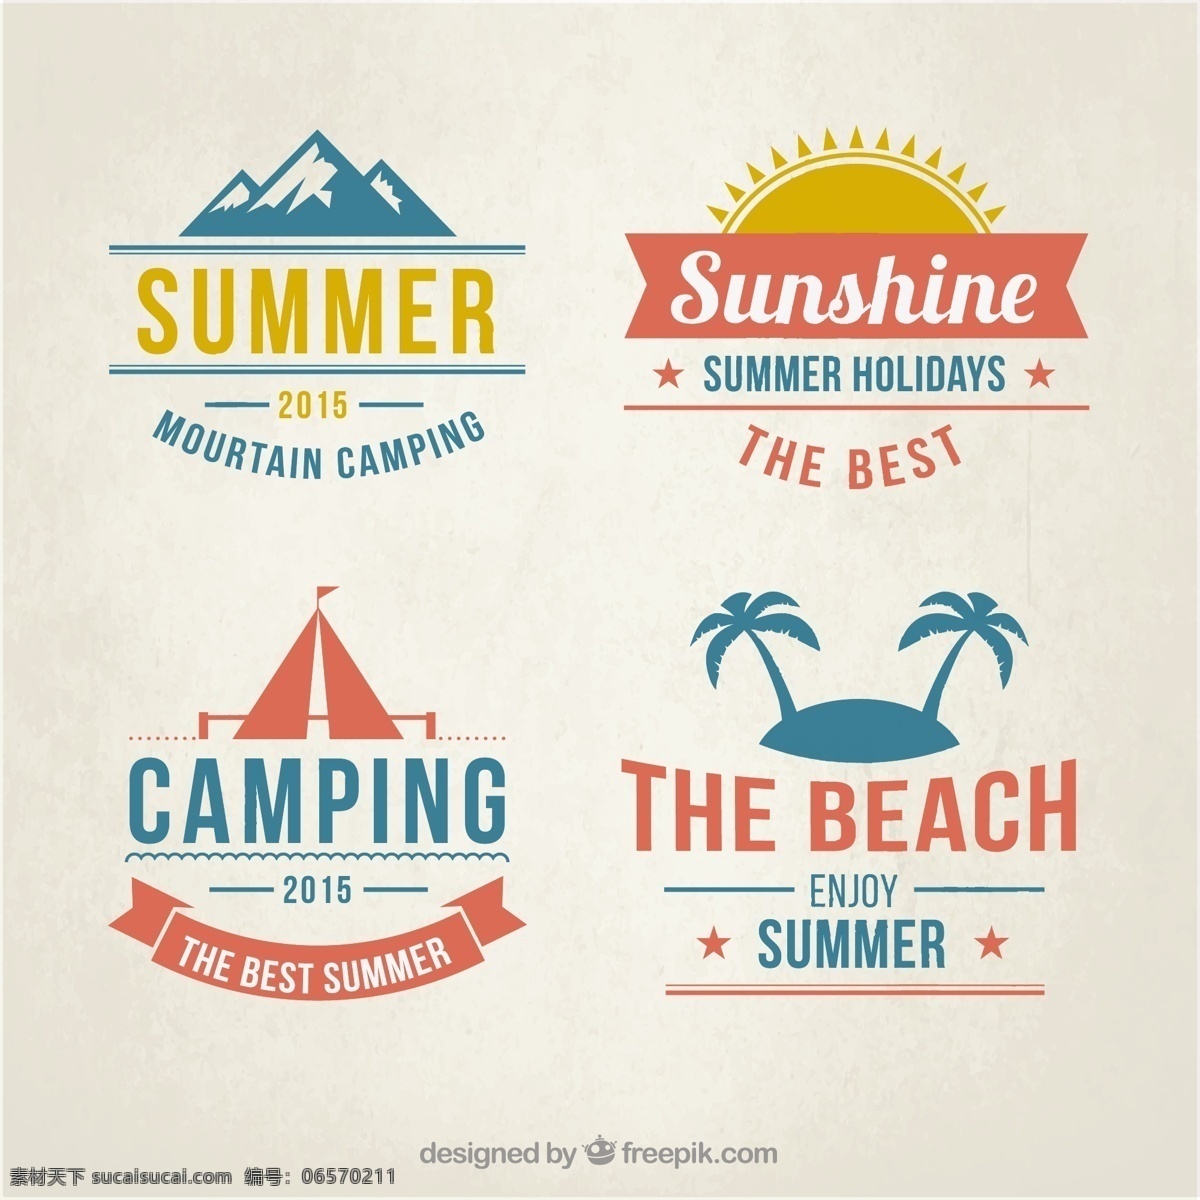 夏季海滩徽章 标签 夏天 徽章 海滩 蓝色 国徽 度假 避暑 假日 夏令时